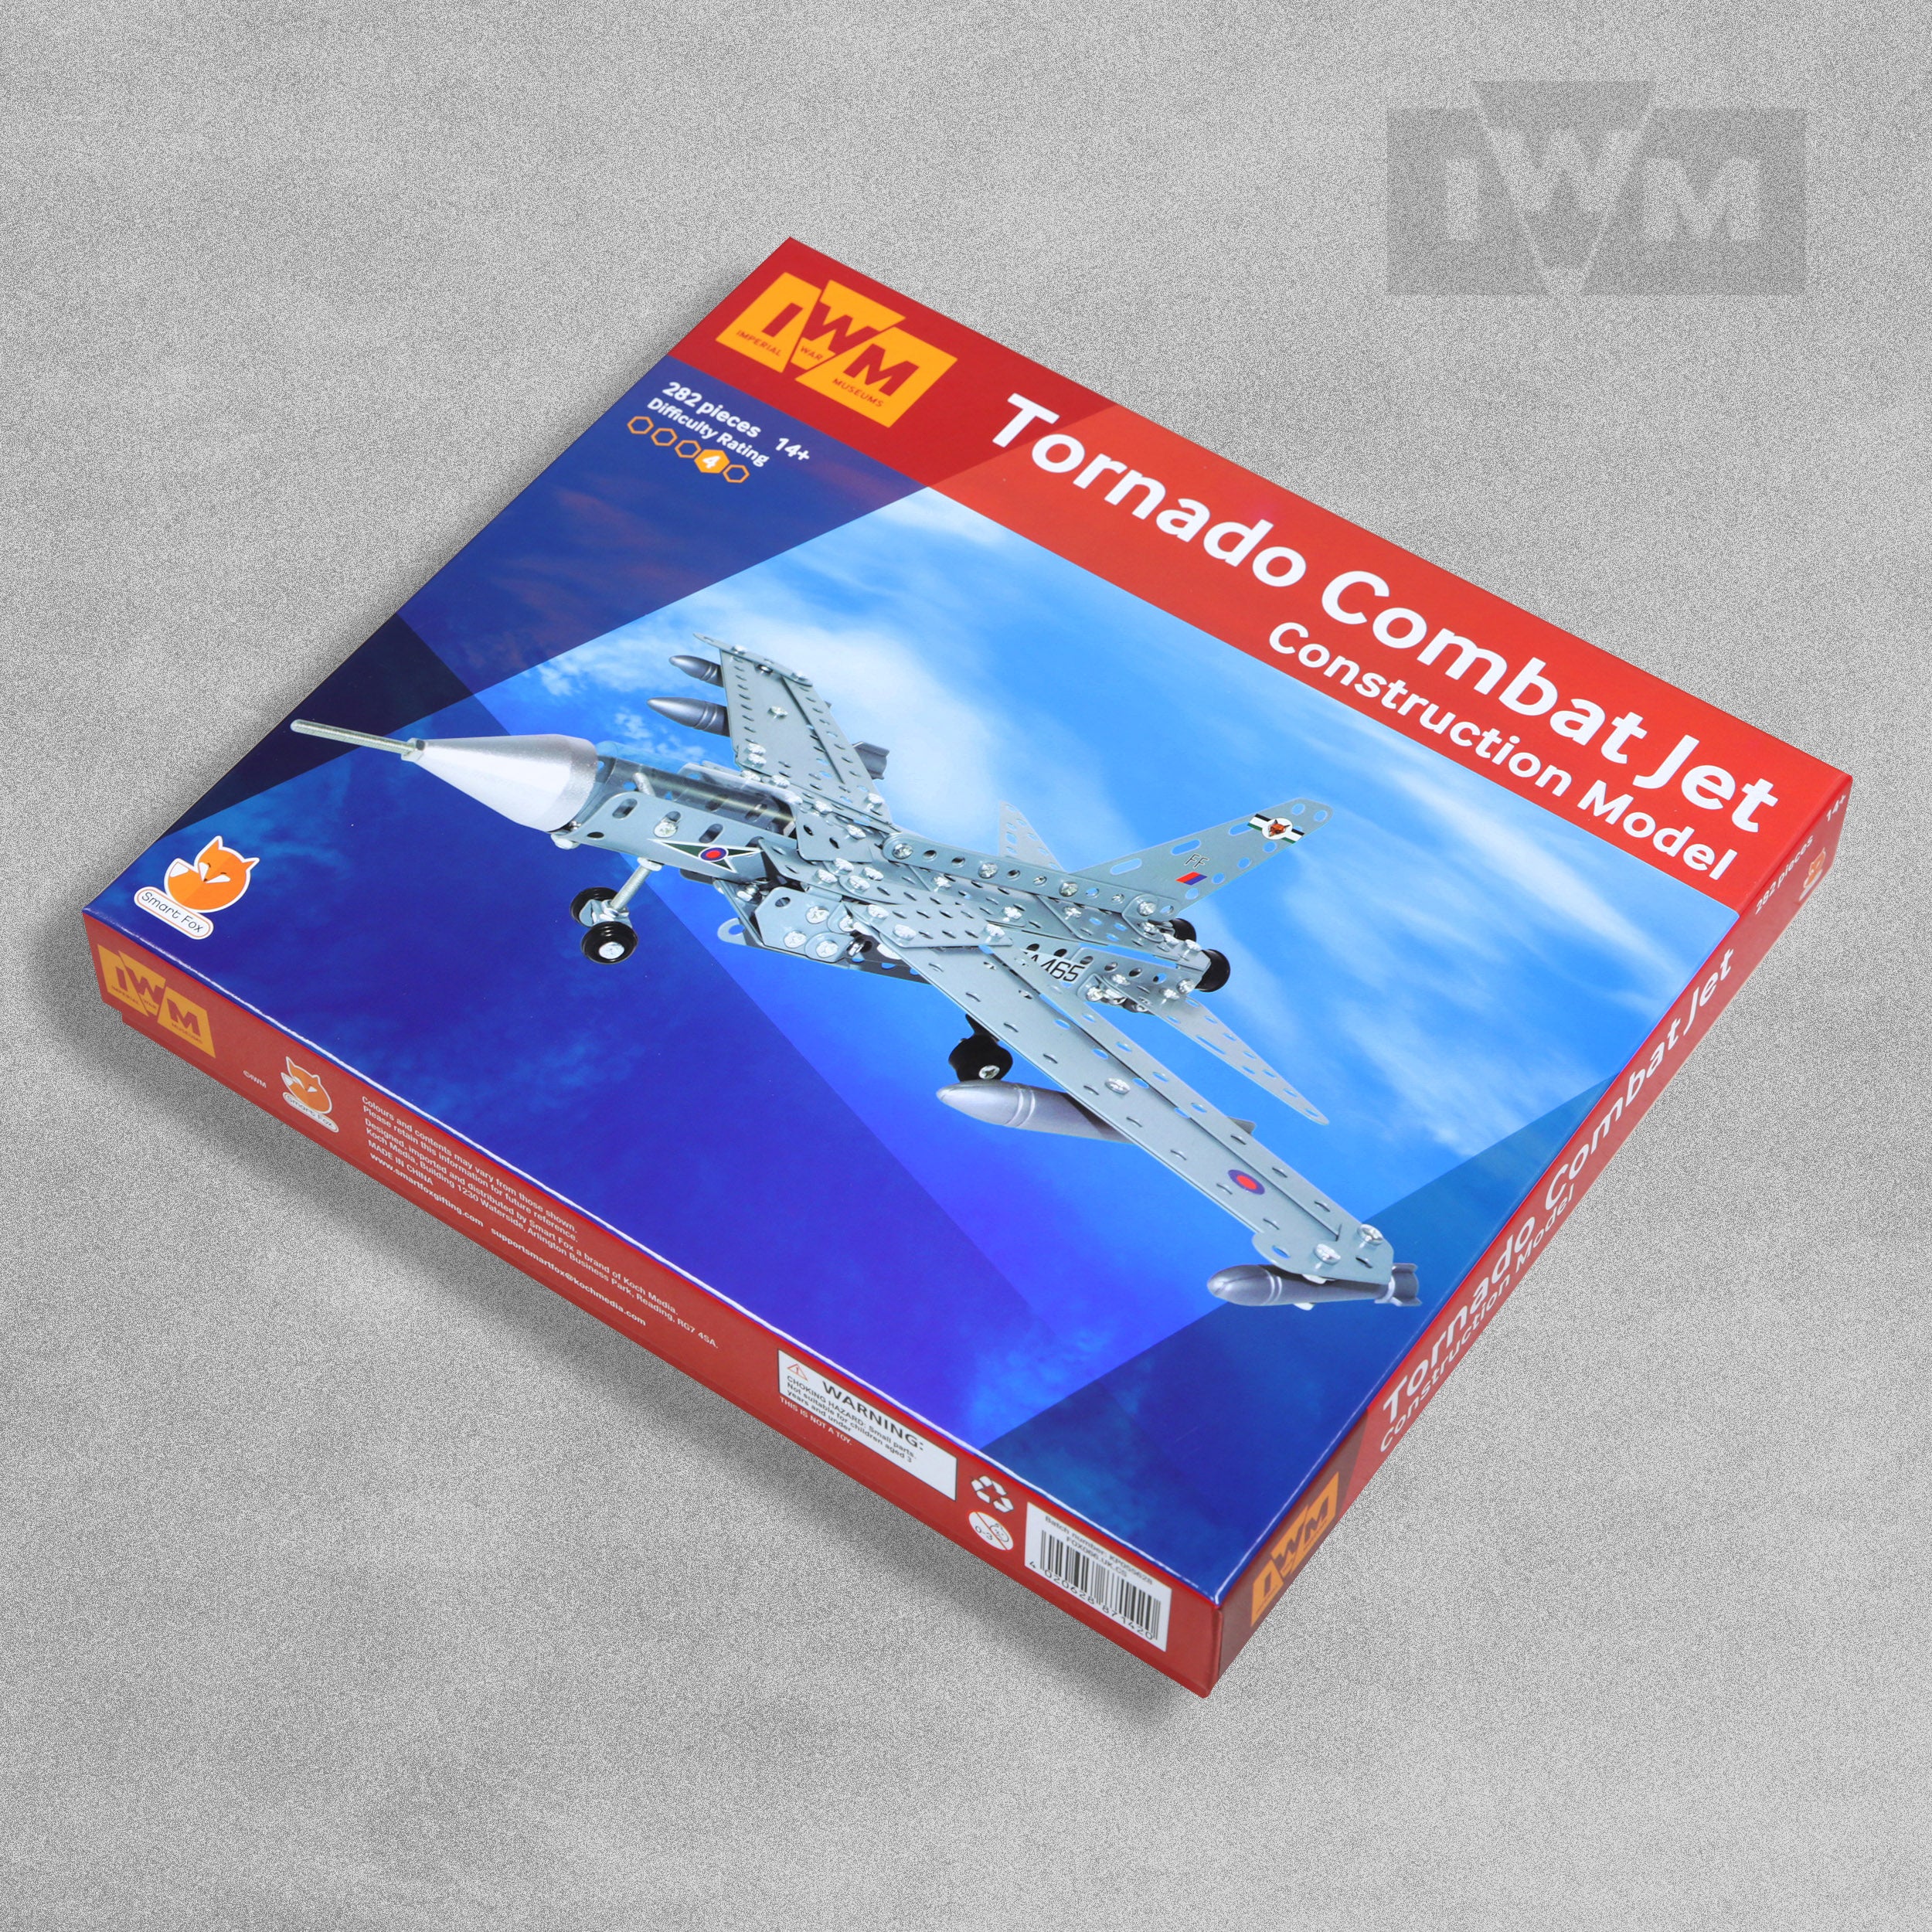 IWM Tornado Combat Jet Construction Model Set